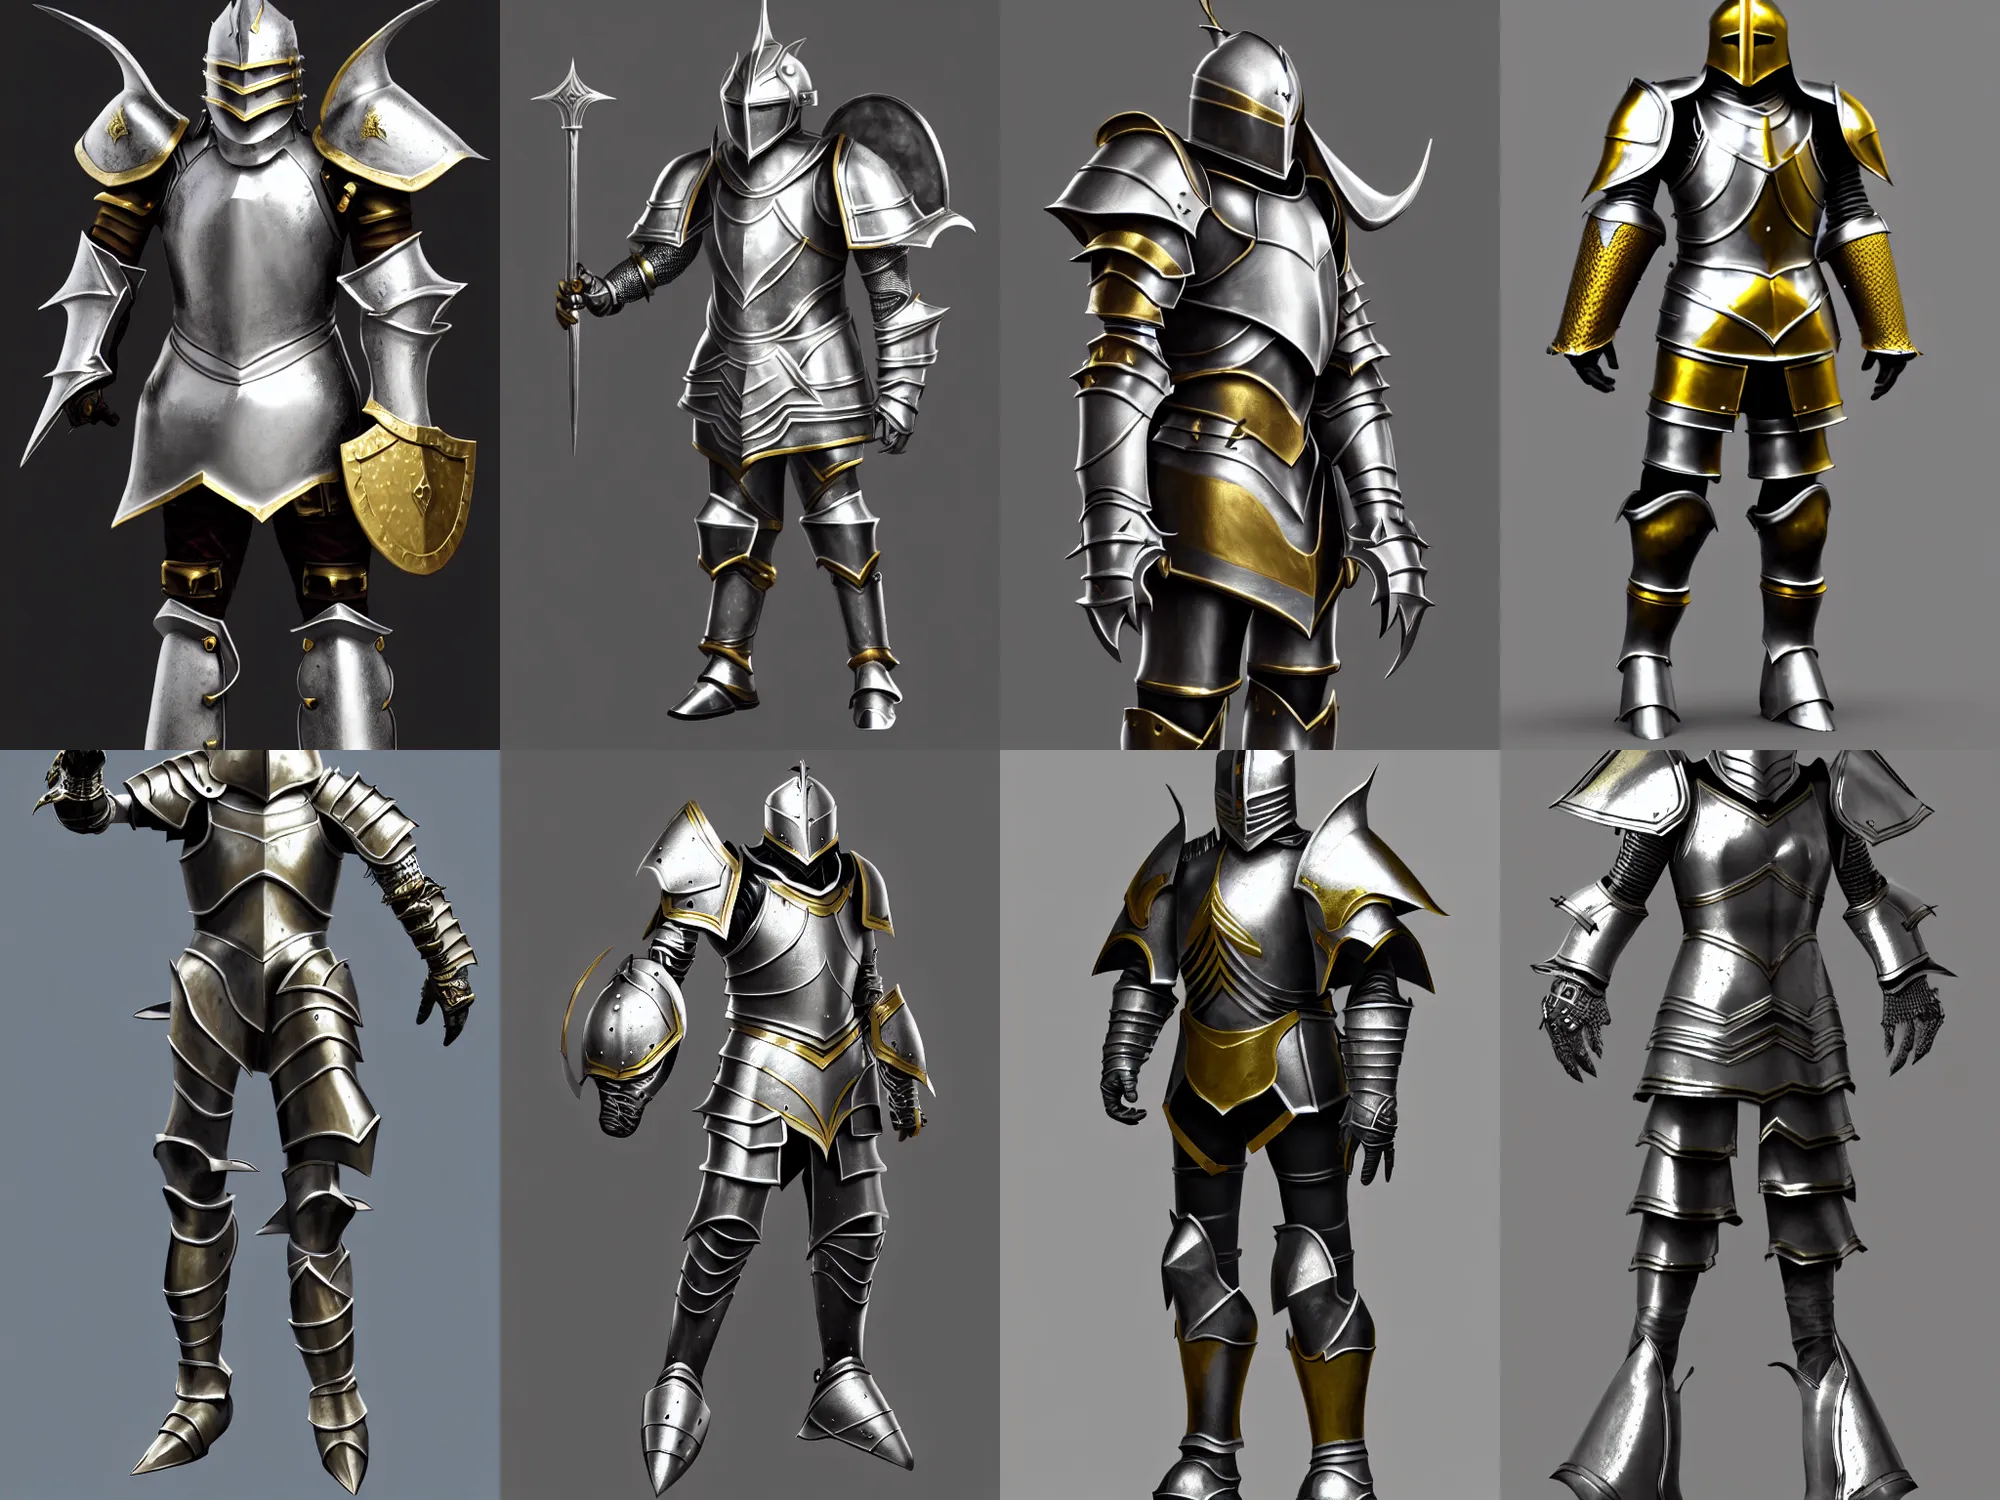 Armor fantasy knight